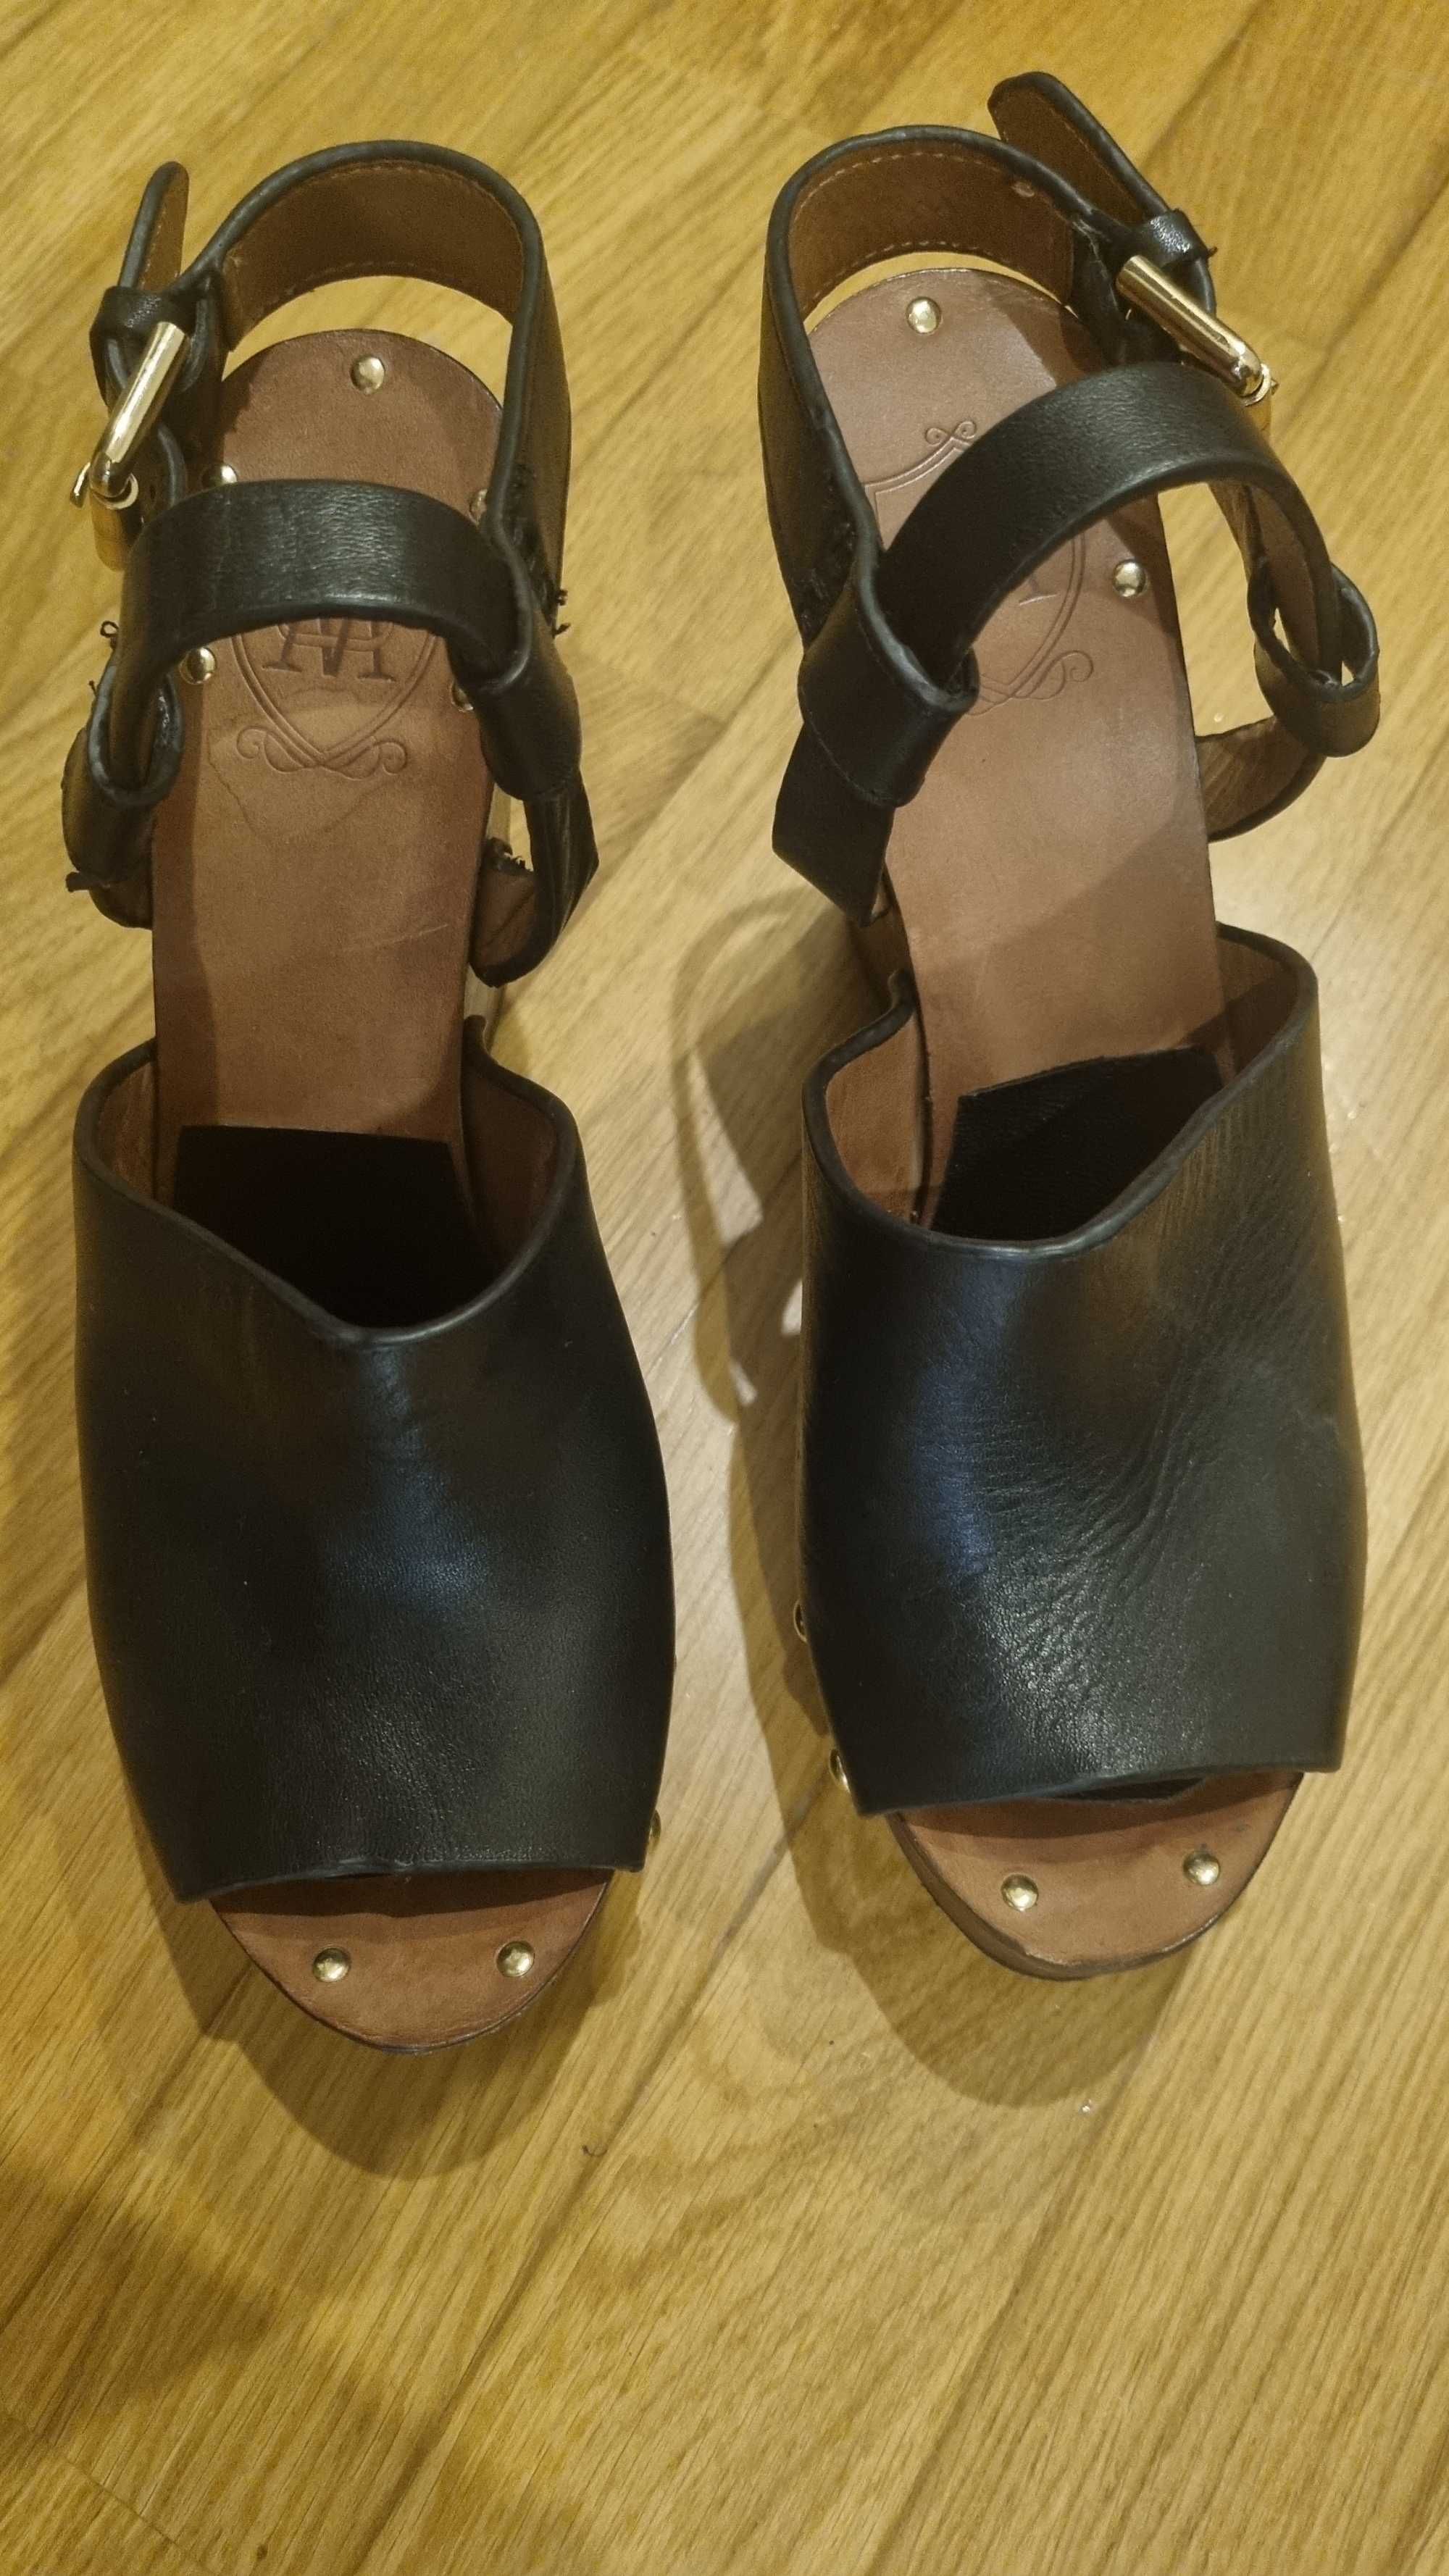 Sandalias altas pretas com tachas